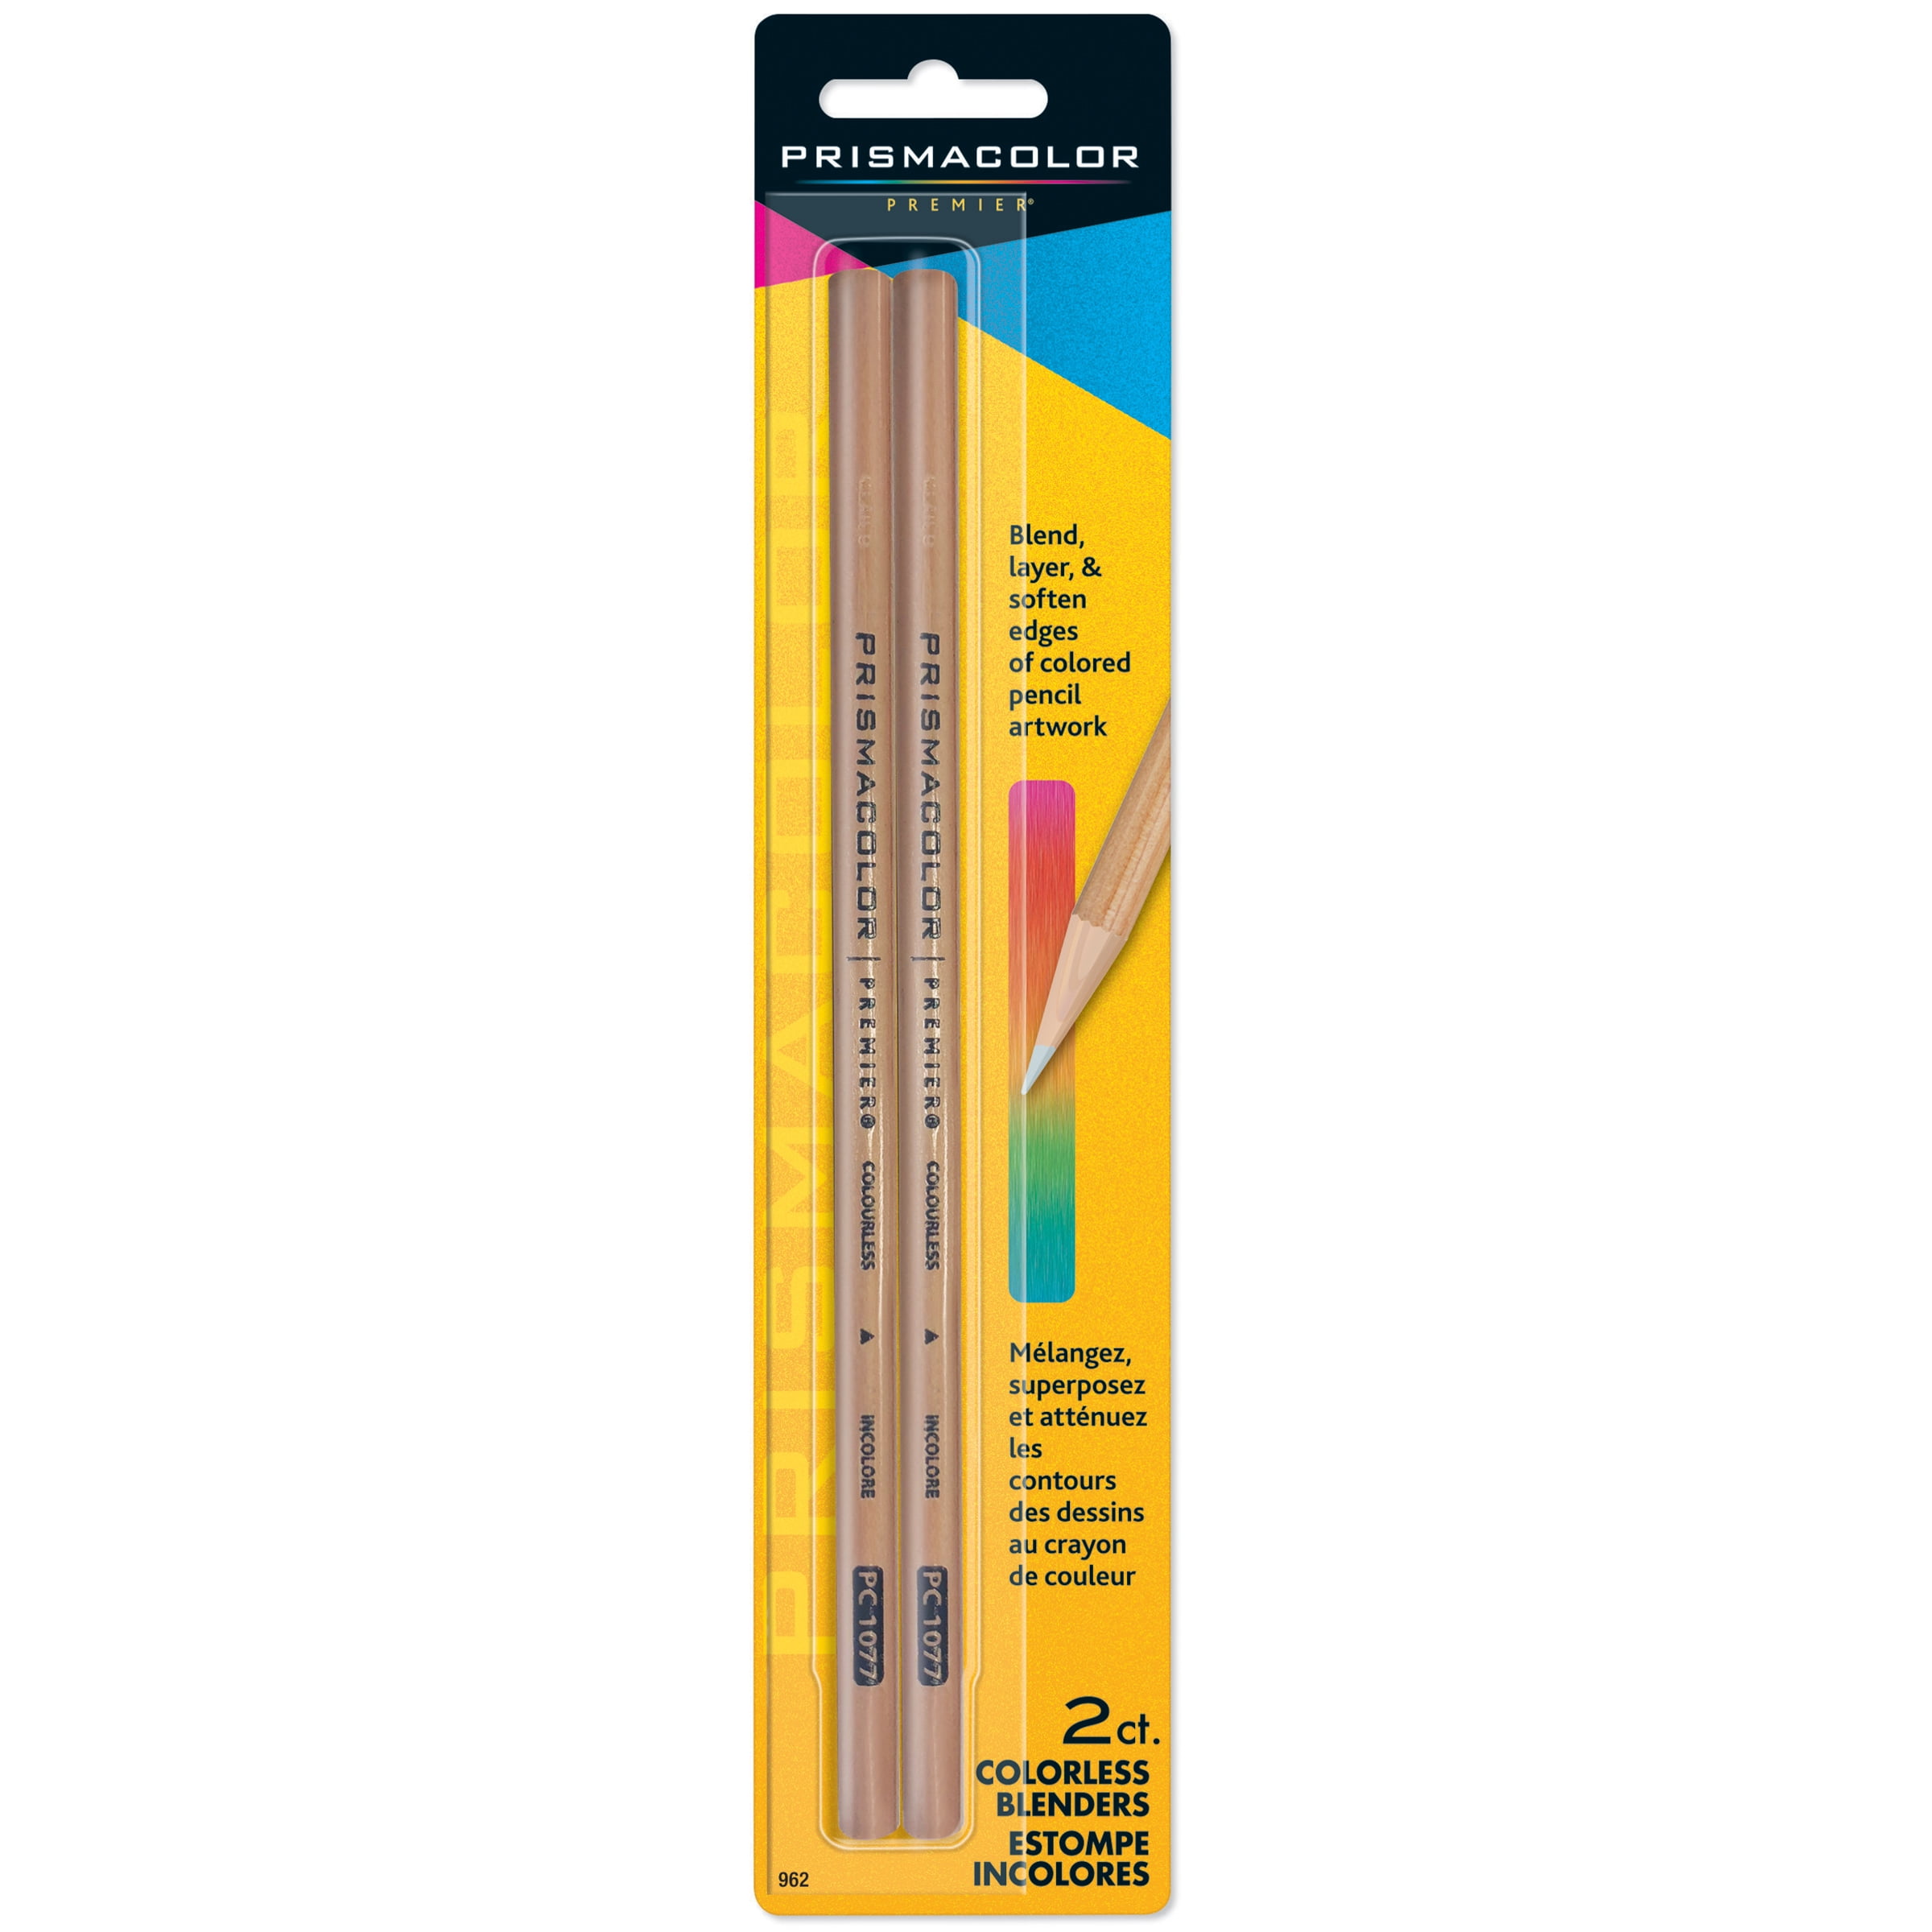 Prismacolor Colorless Blending pencil